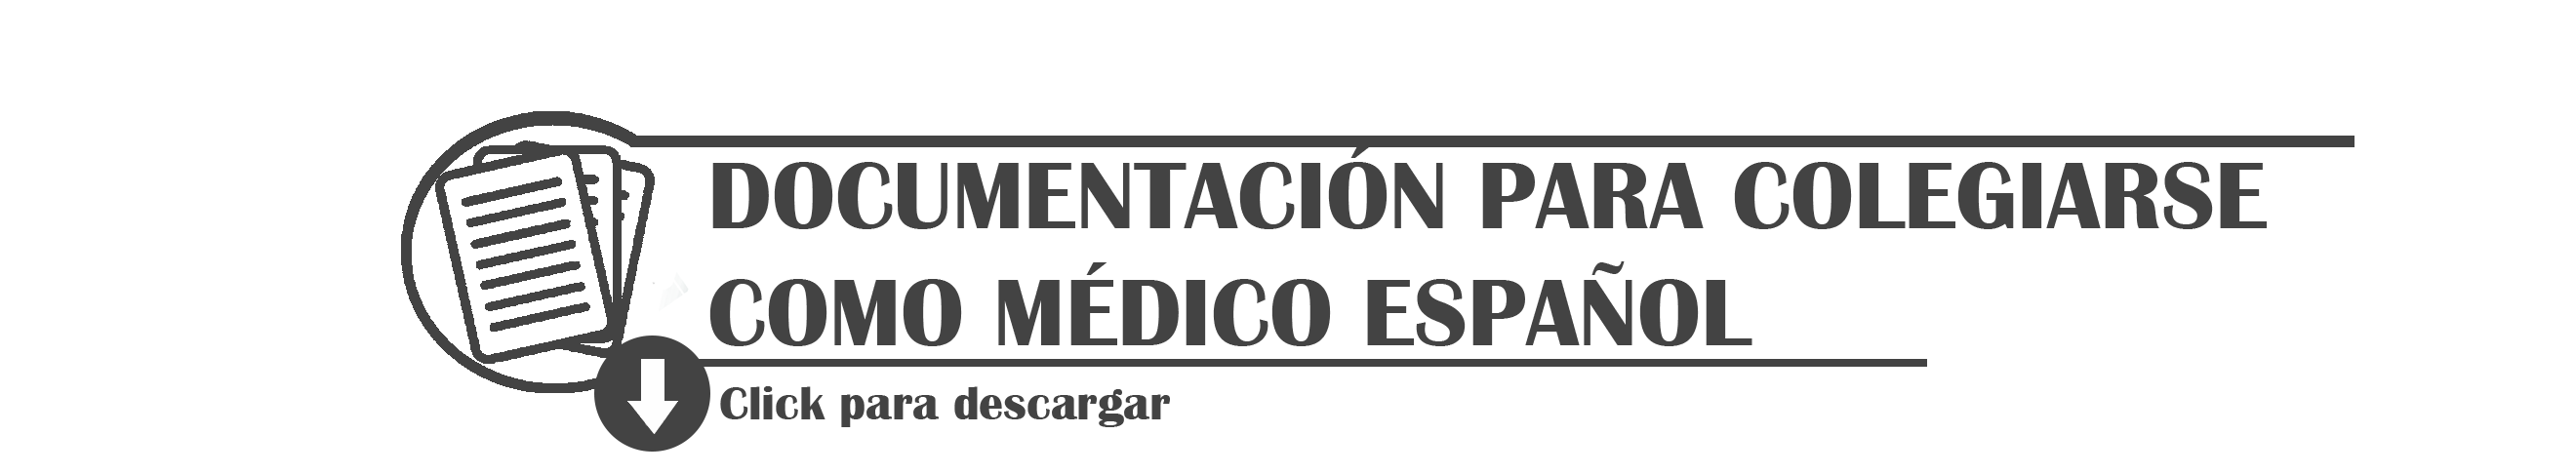 Documentación para colegiarse como médico español